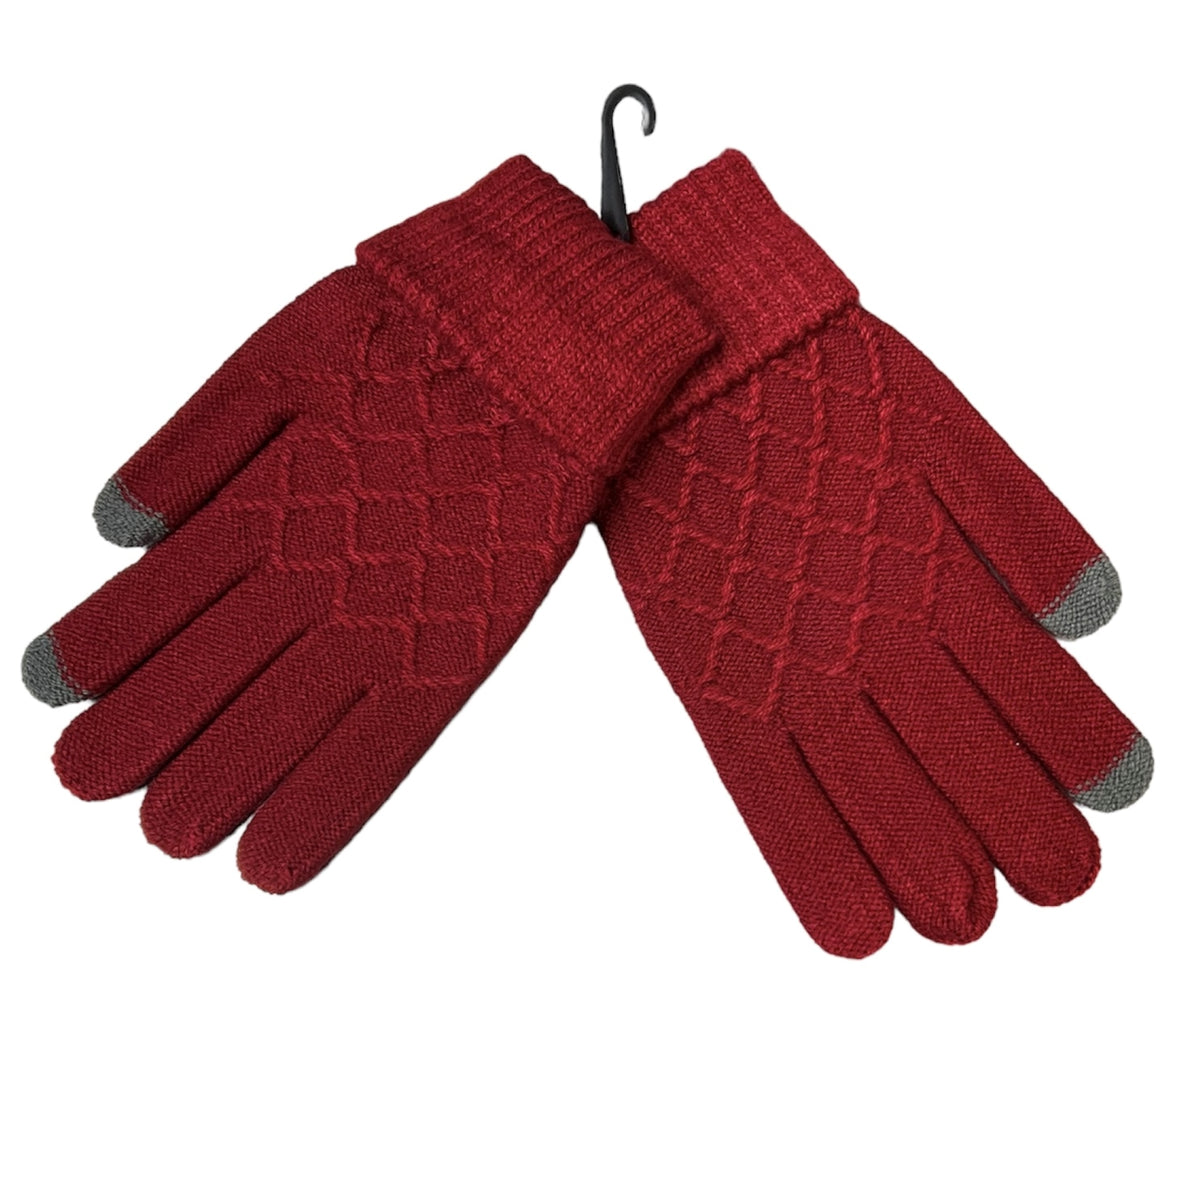 Équipez-vous de ces gants laine bordeaux “C’EST ELLE”, à la fois doux et chaleureux ! Ces gants sont parfaits pour vos activités en extérieur ainsi que pour vous réchauffer en hiver. 